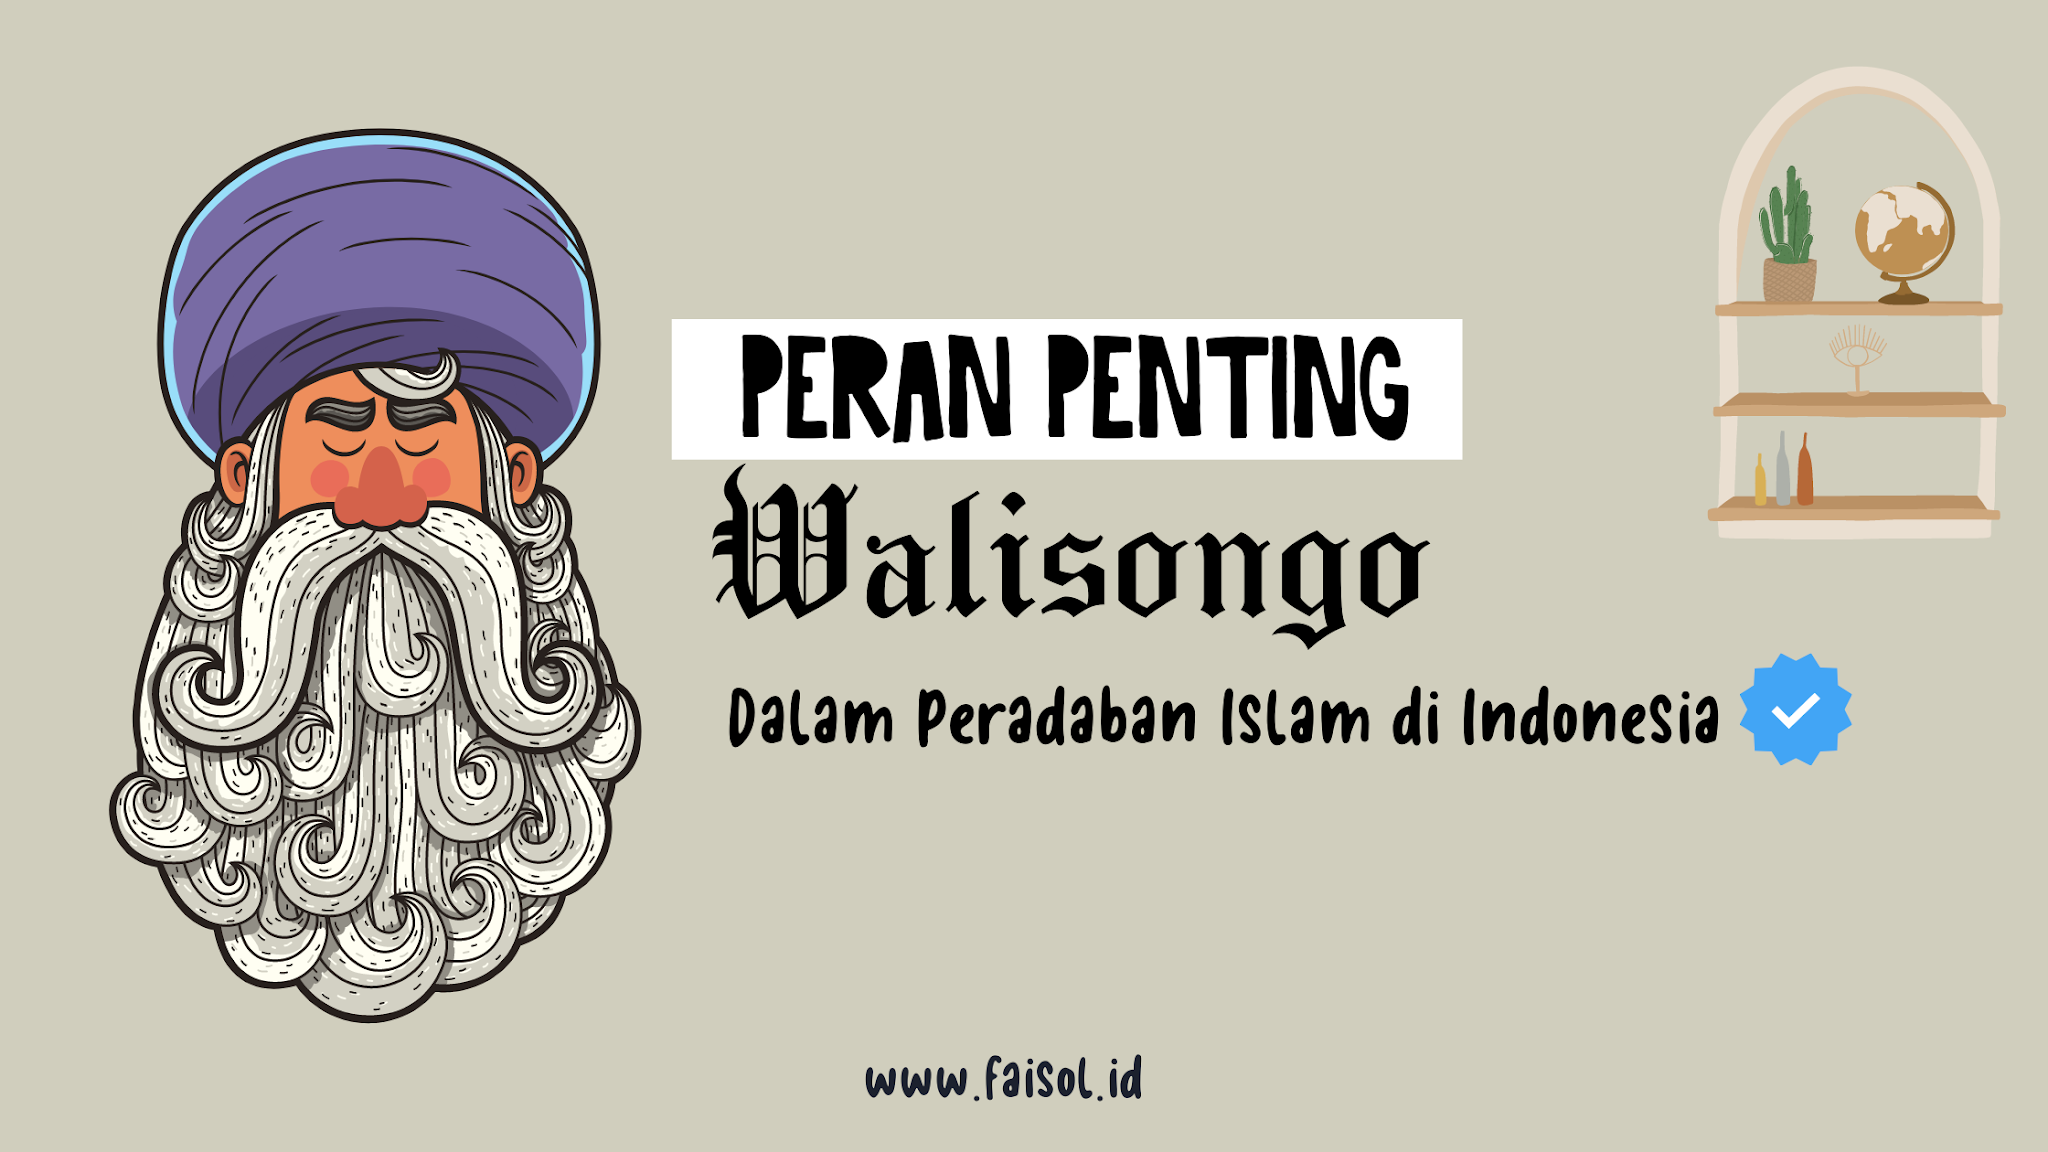 Peran Penting Walisongo dalam Peradaban Islam di Indonesia